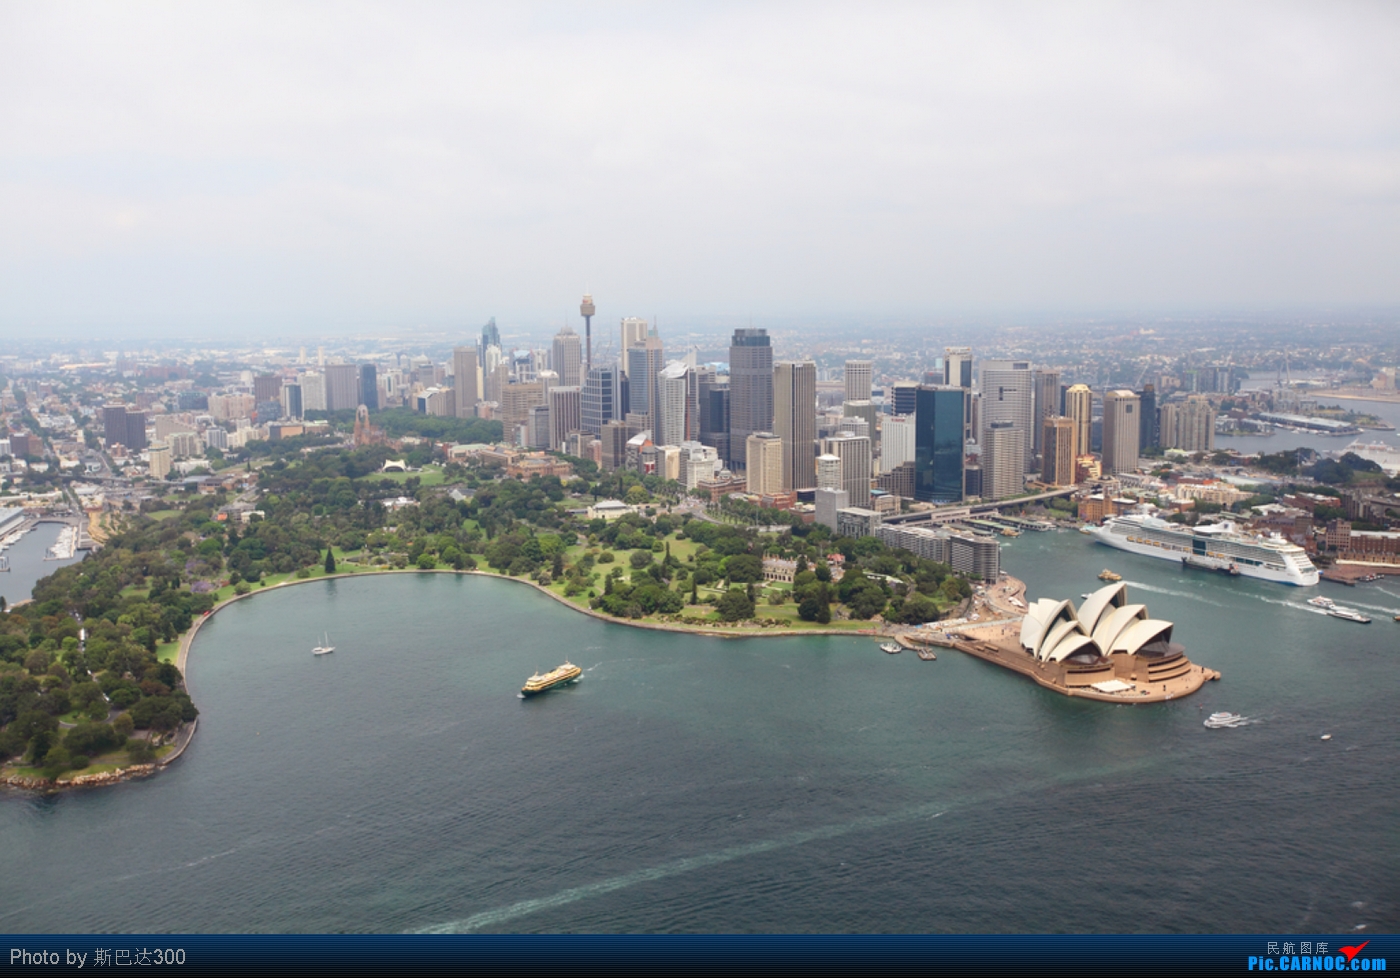 近两月悉尼房屋拍卖清空率持续达80%以上